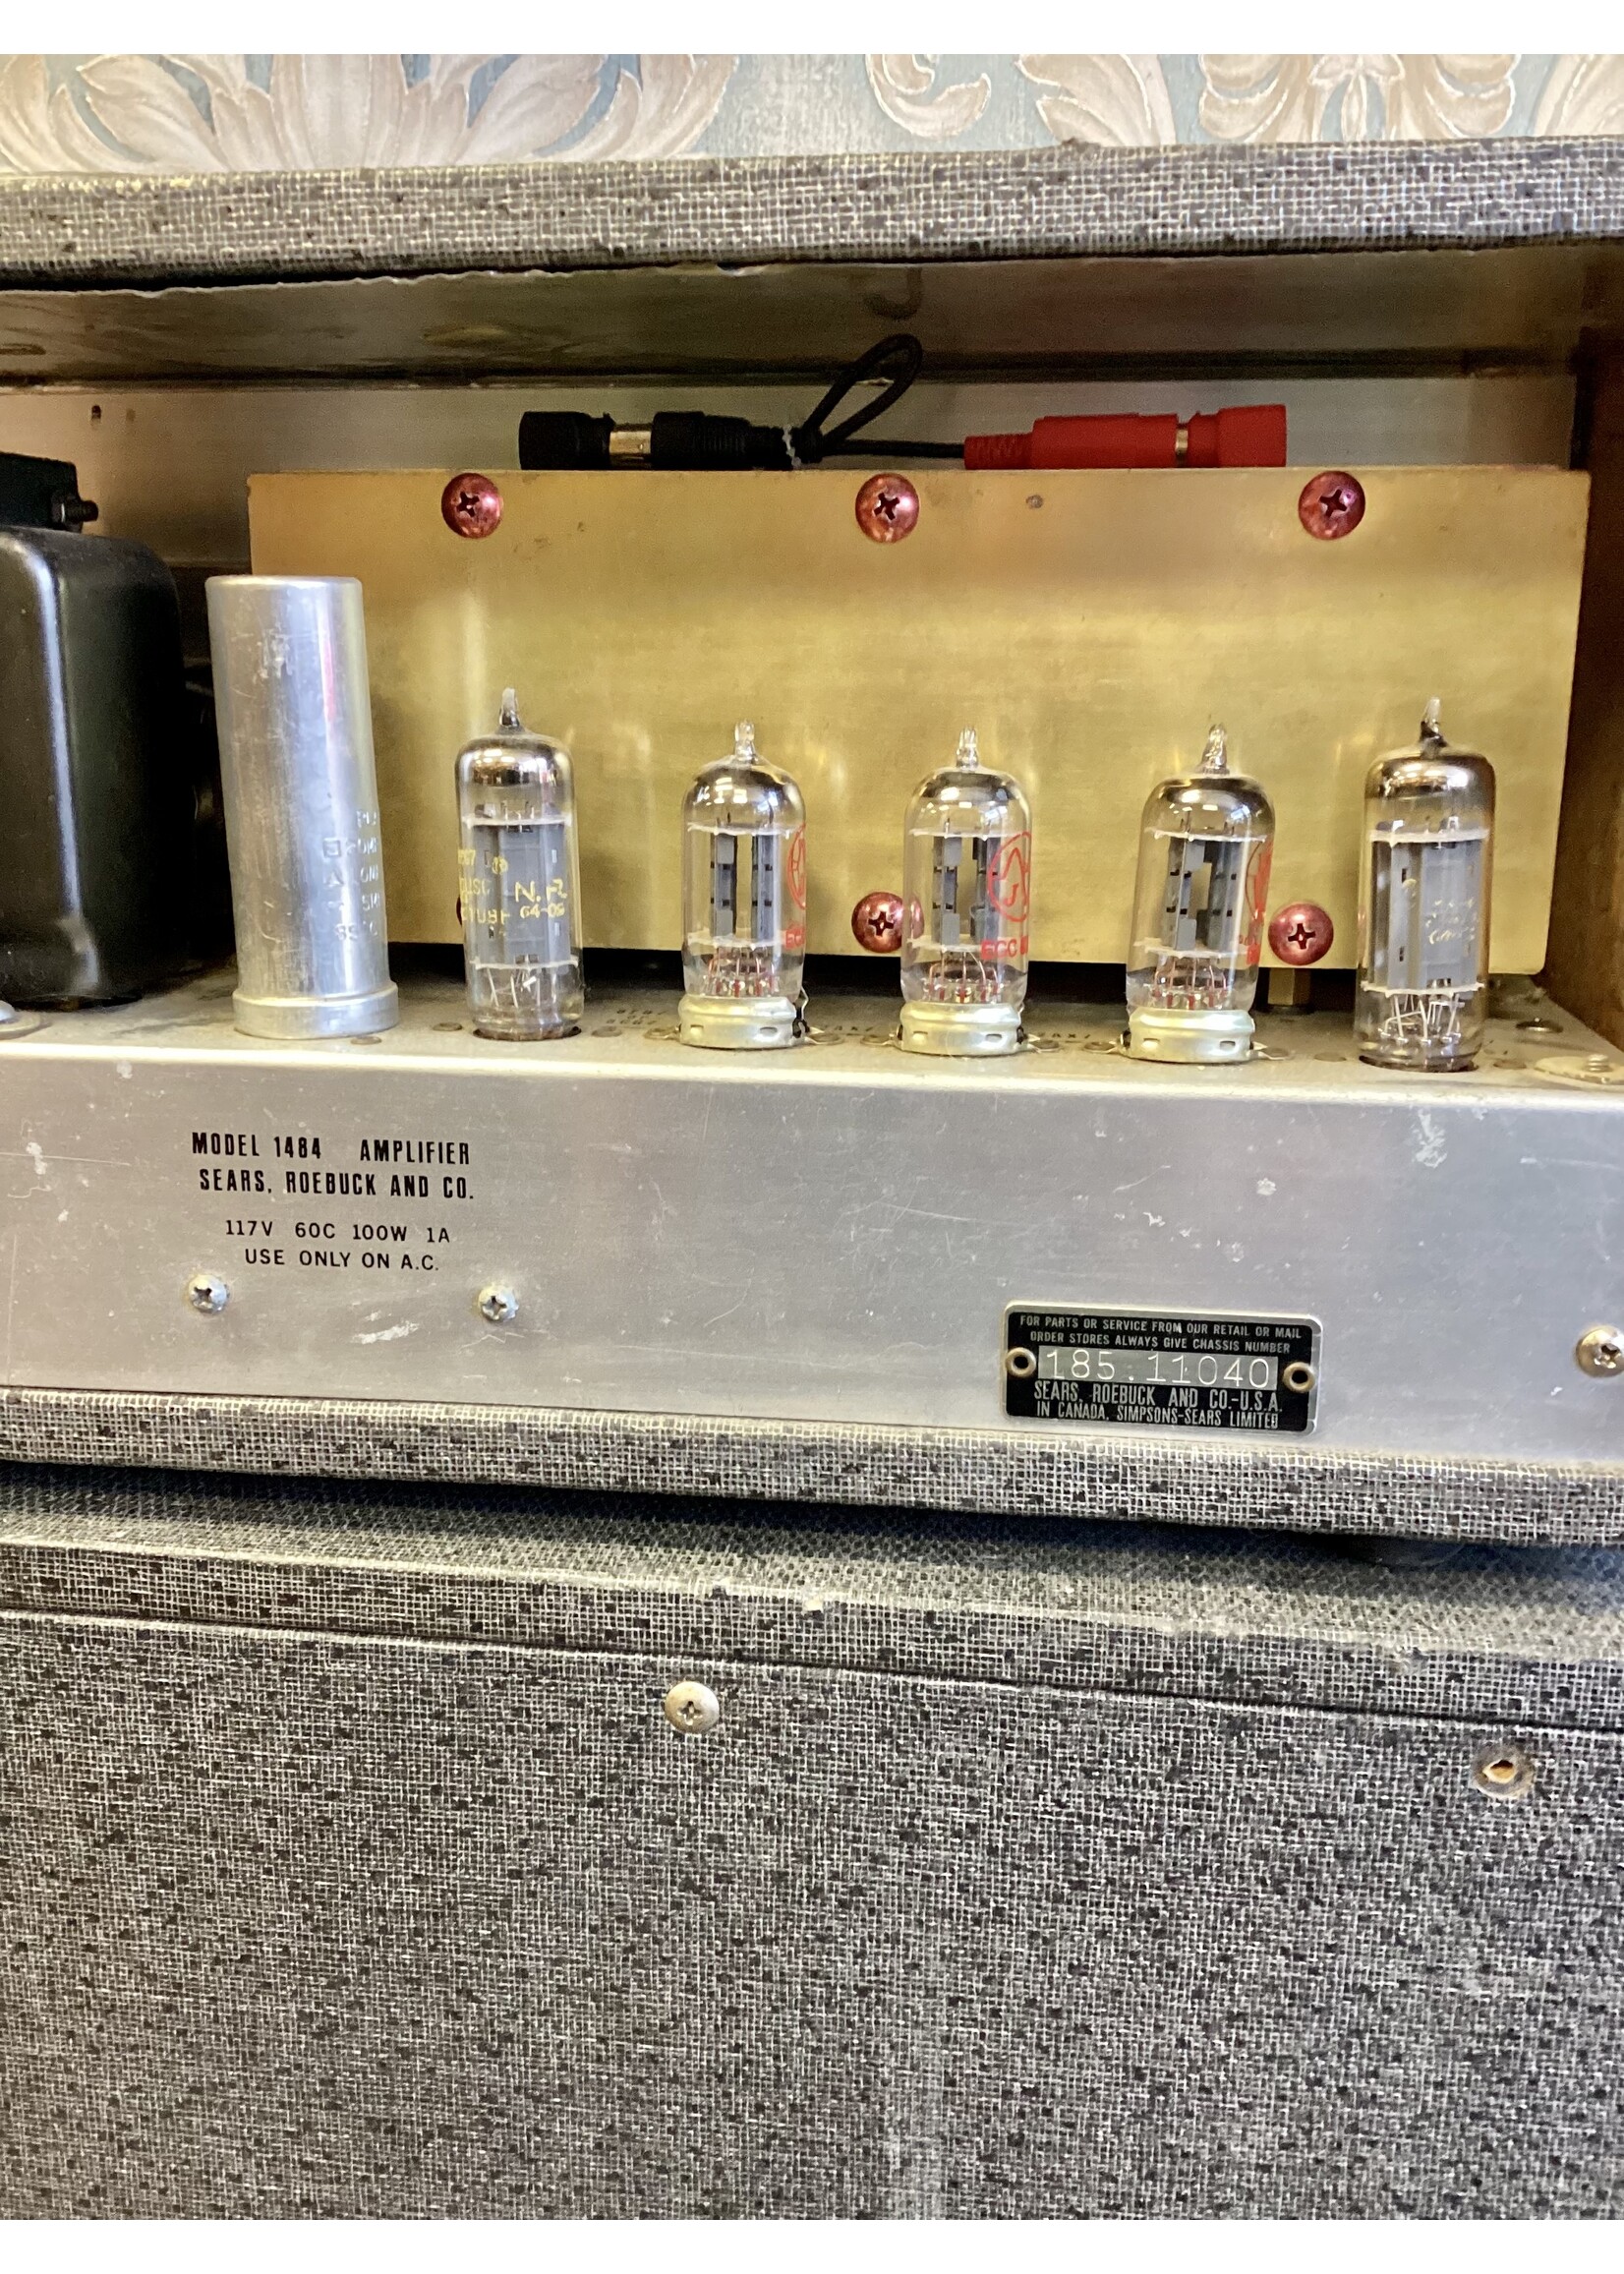 Silvertone Silvertone 1484 Twin Twelve Amplifier - 1964 - SOLD